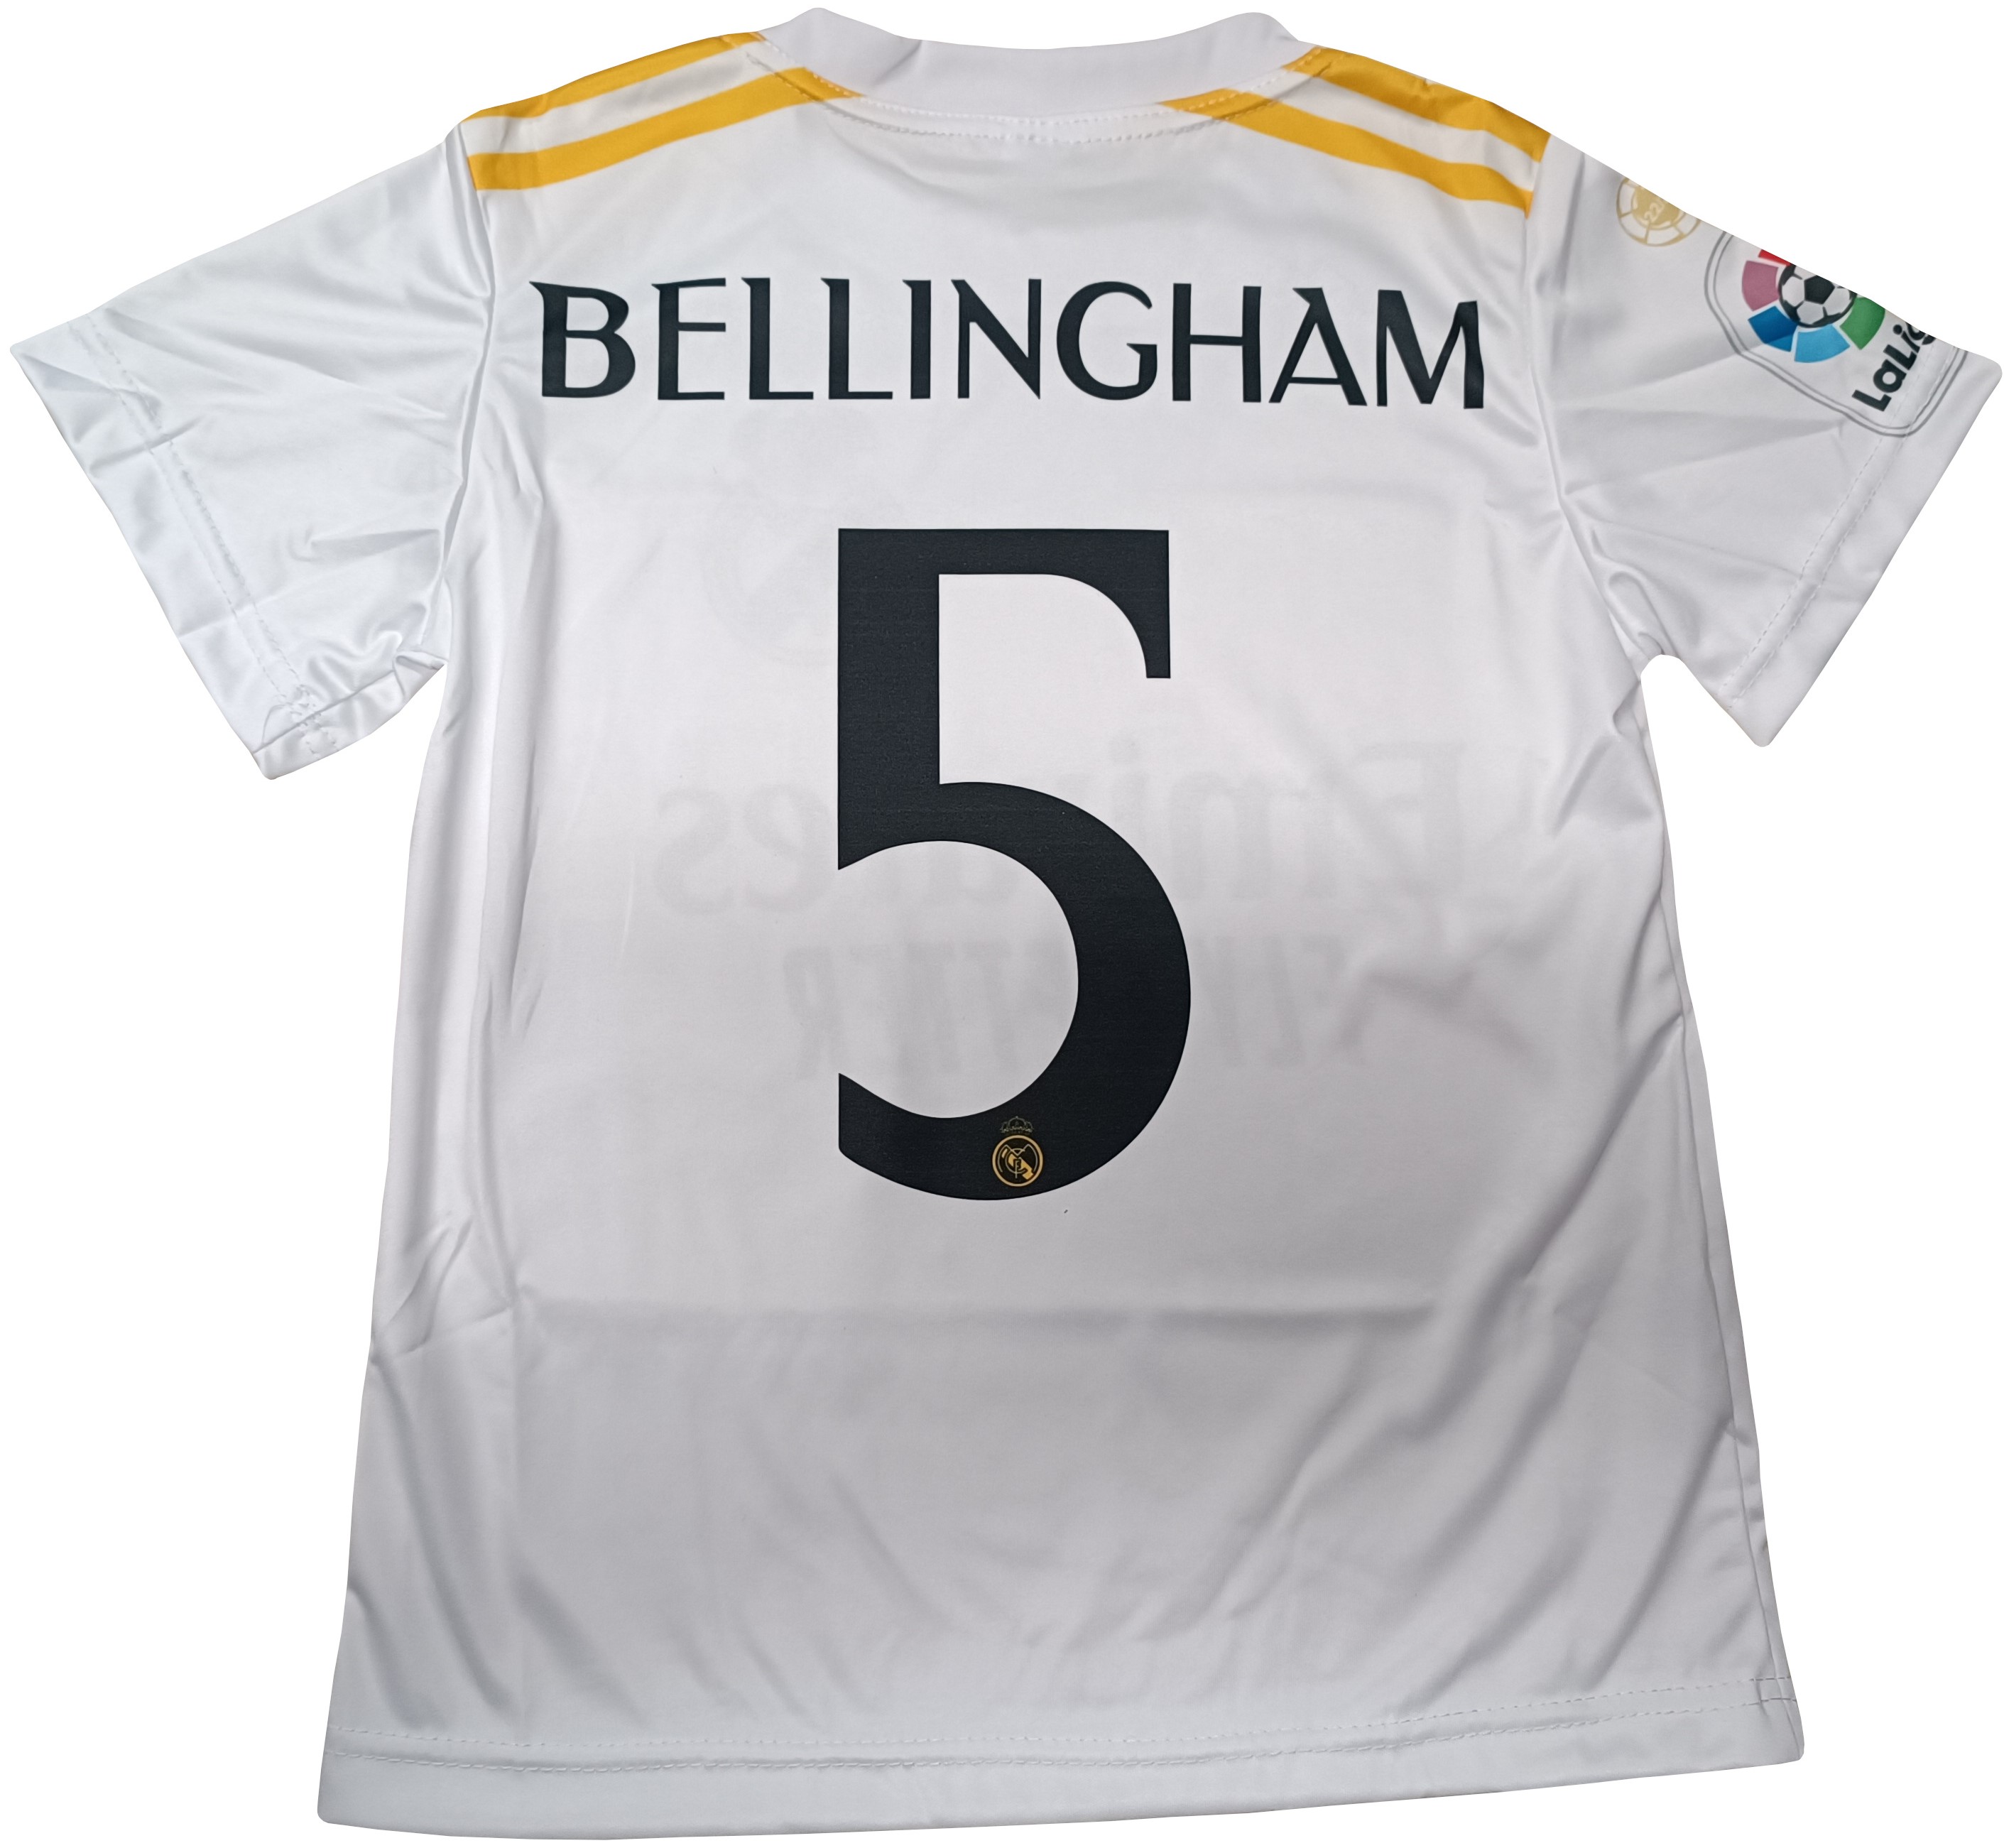 Fotbalový dres BELLINGHAM 5 Real 2023 Velikost: 116 cm (3-4 roky) povánoční sleva